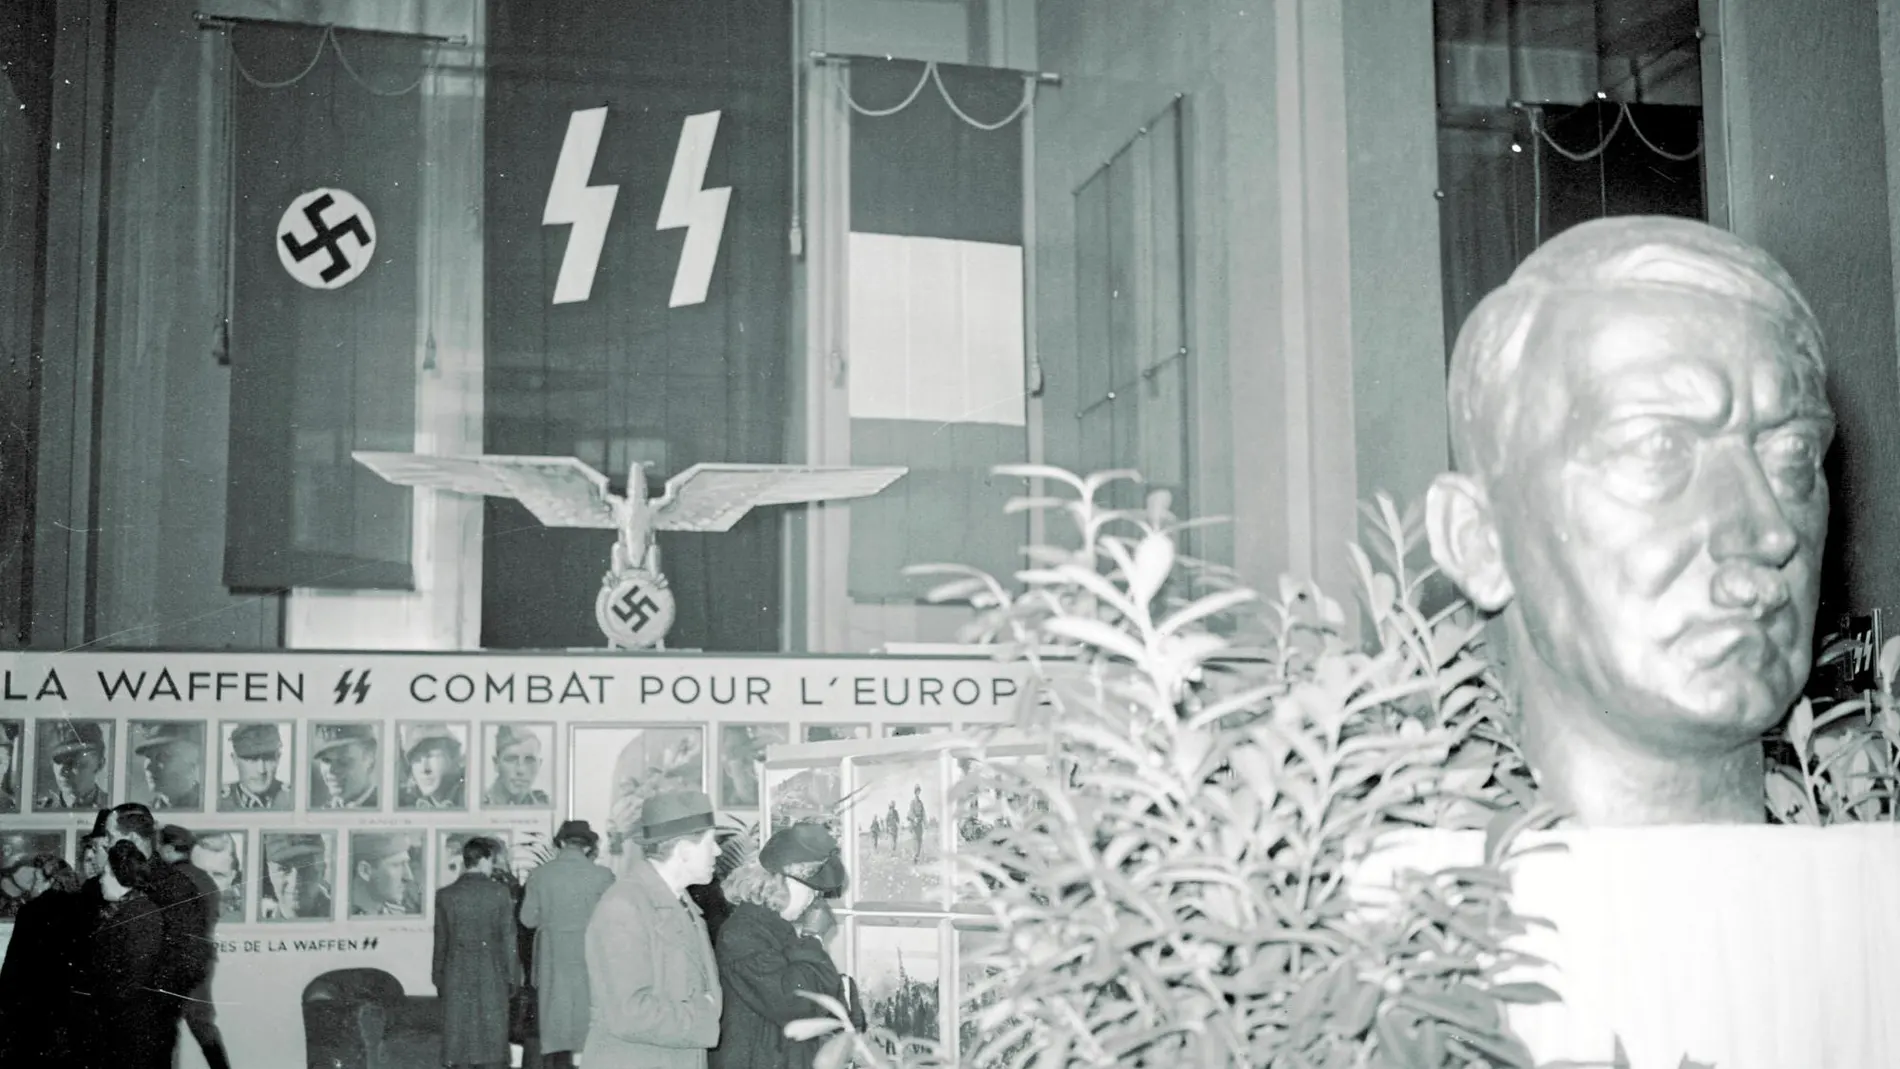 Cuando el ejército nazi ocupó París en 1940 varios cuadros de la Luftwaffe, ejército del aire nazi, se instalaron en el Palacio de Luxemburgo, nombre de la sede del Senado francés, donde ha aparecido el busto del Führer de la imagen